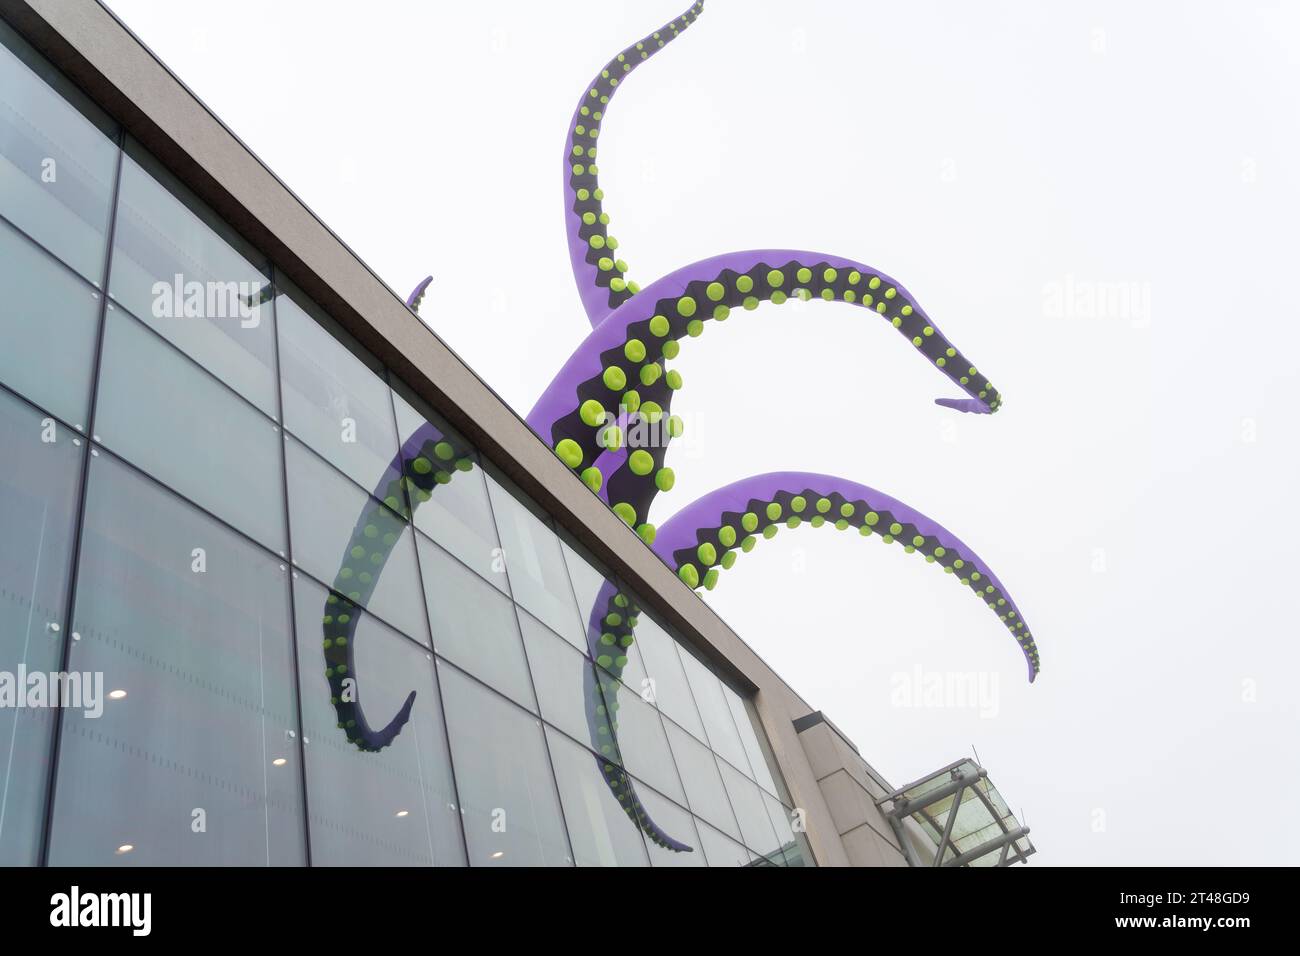 MonsterBoro öffentliche Kunstinstallation aufblasbarer Kreaturen, einige mit Tentakeln, auf Gebäuden in Middlesbrough, Großbritanniens Stadtzentrum, nach Entwürfen in Air. Stockfoto